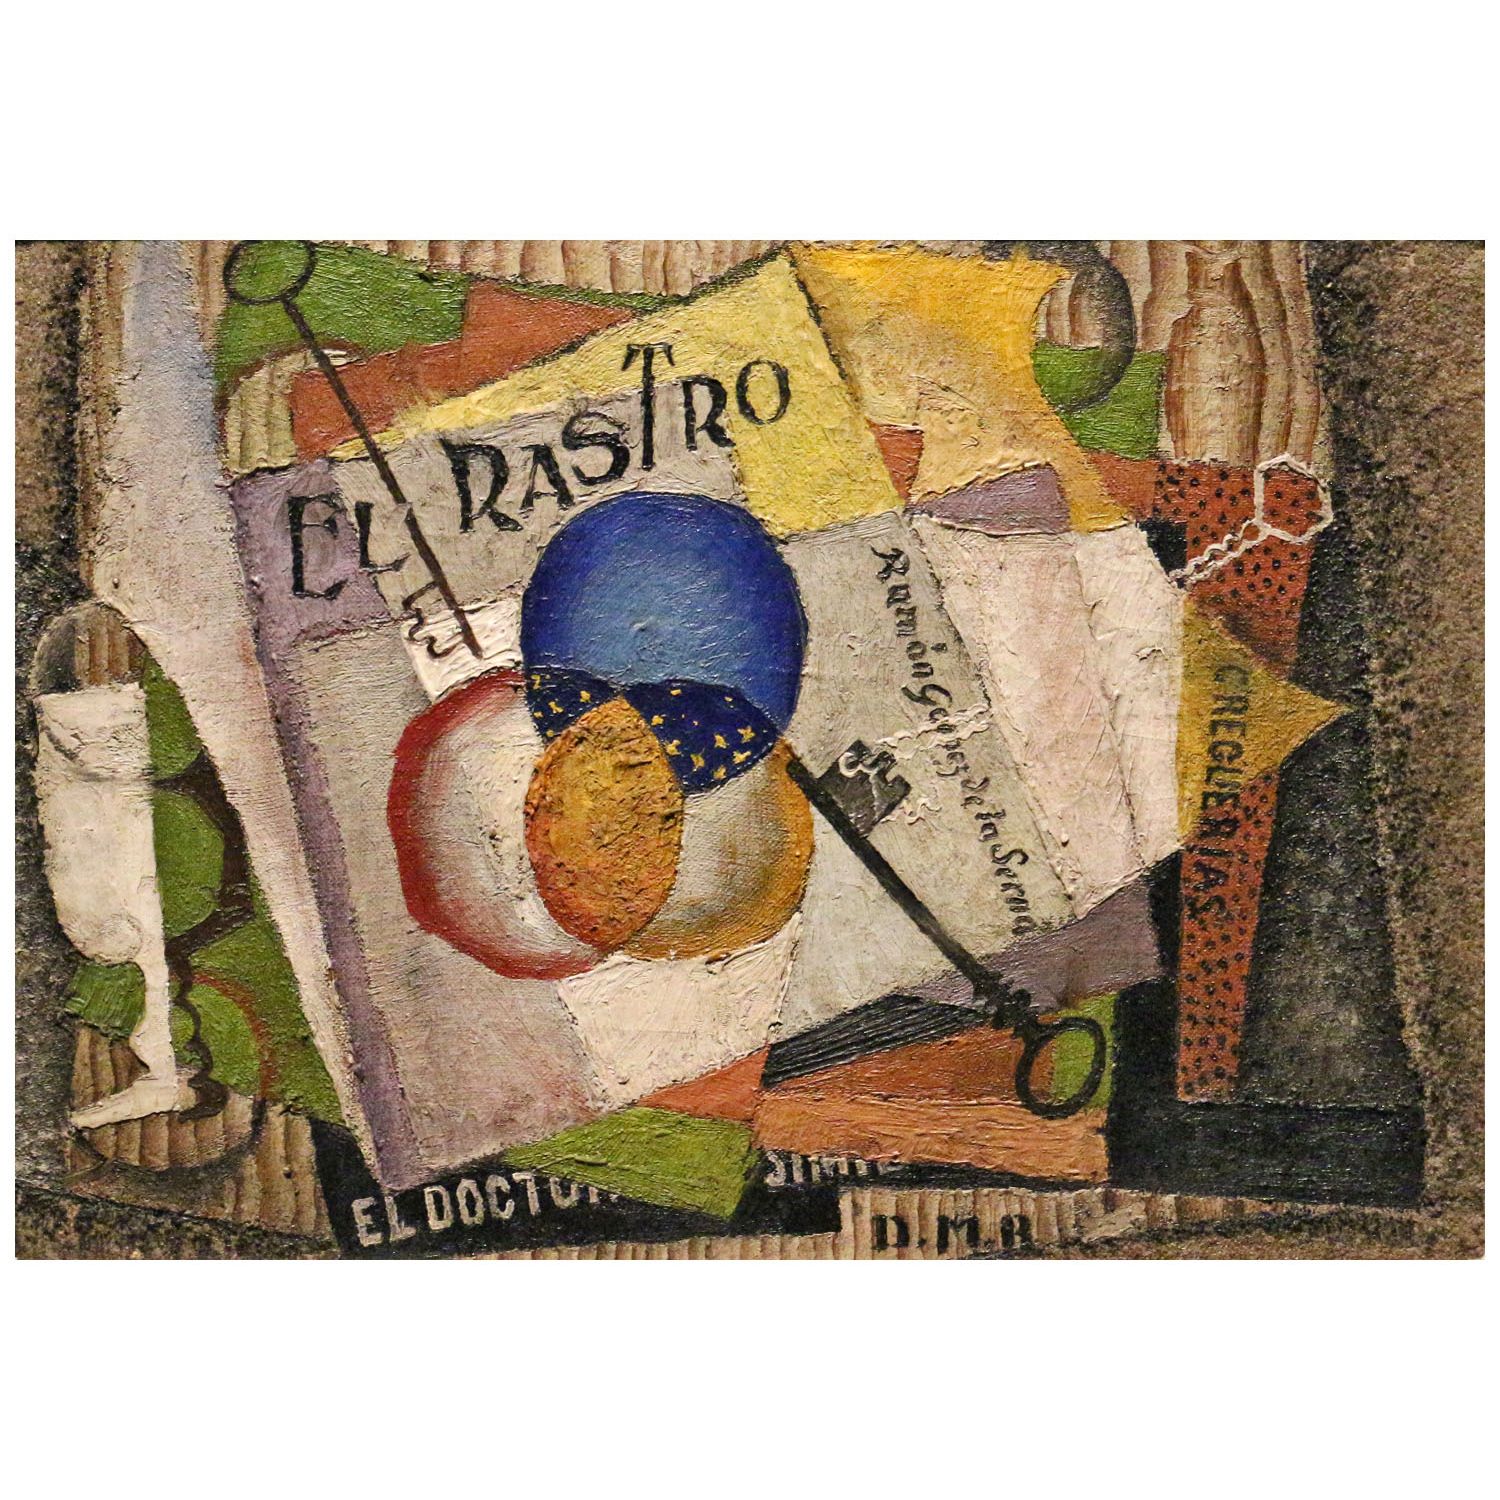 Diego Rivera. The Flea Market. 1915. Museo Dolores Olmedo